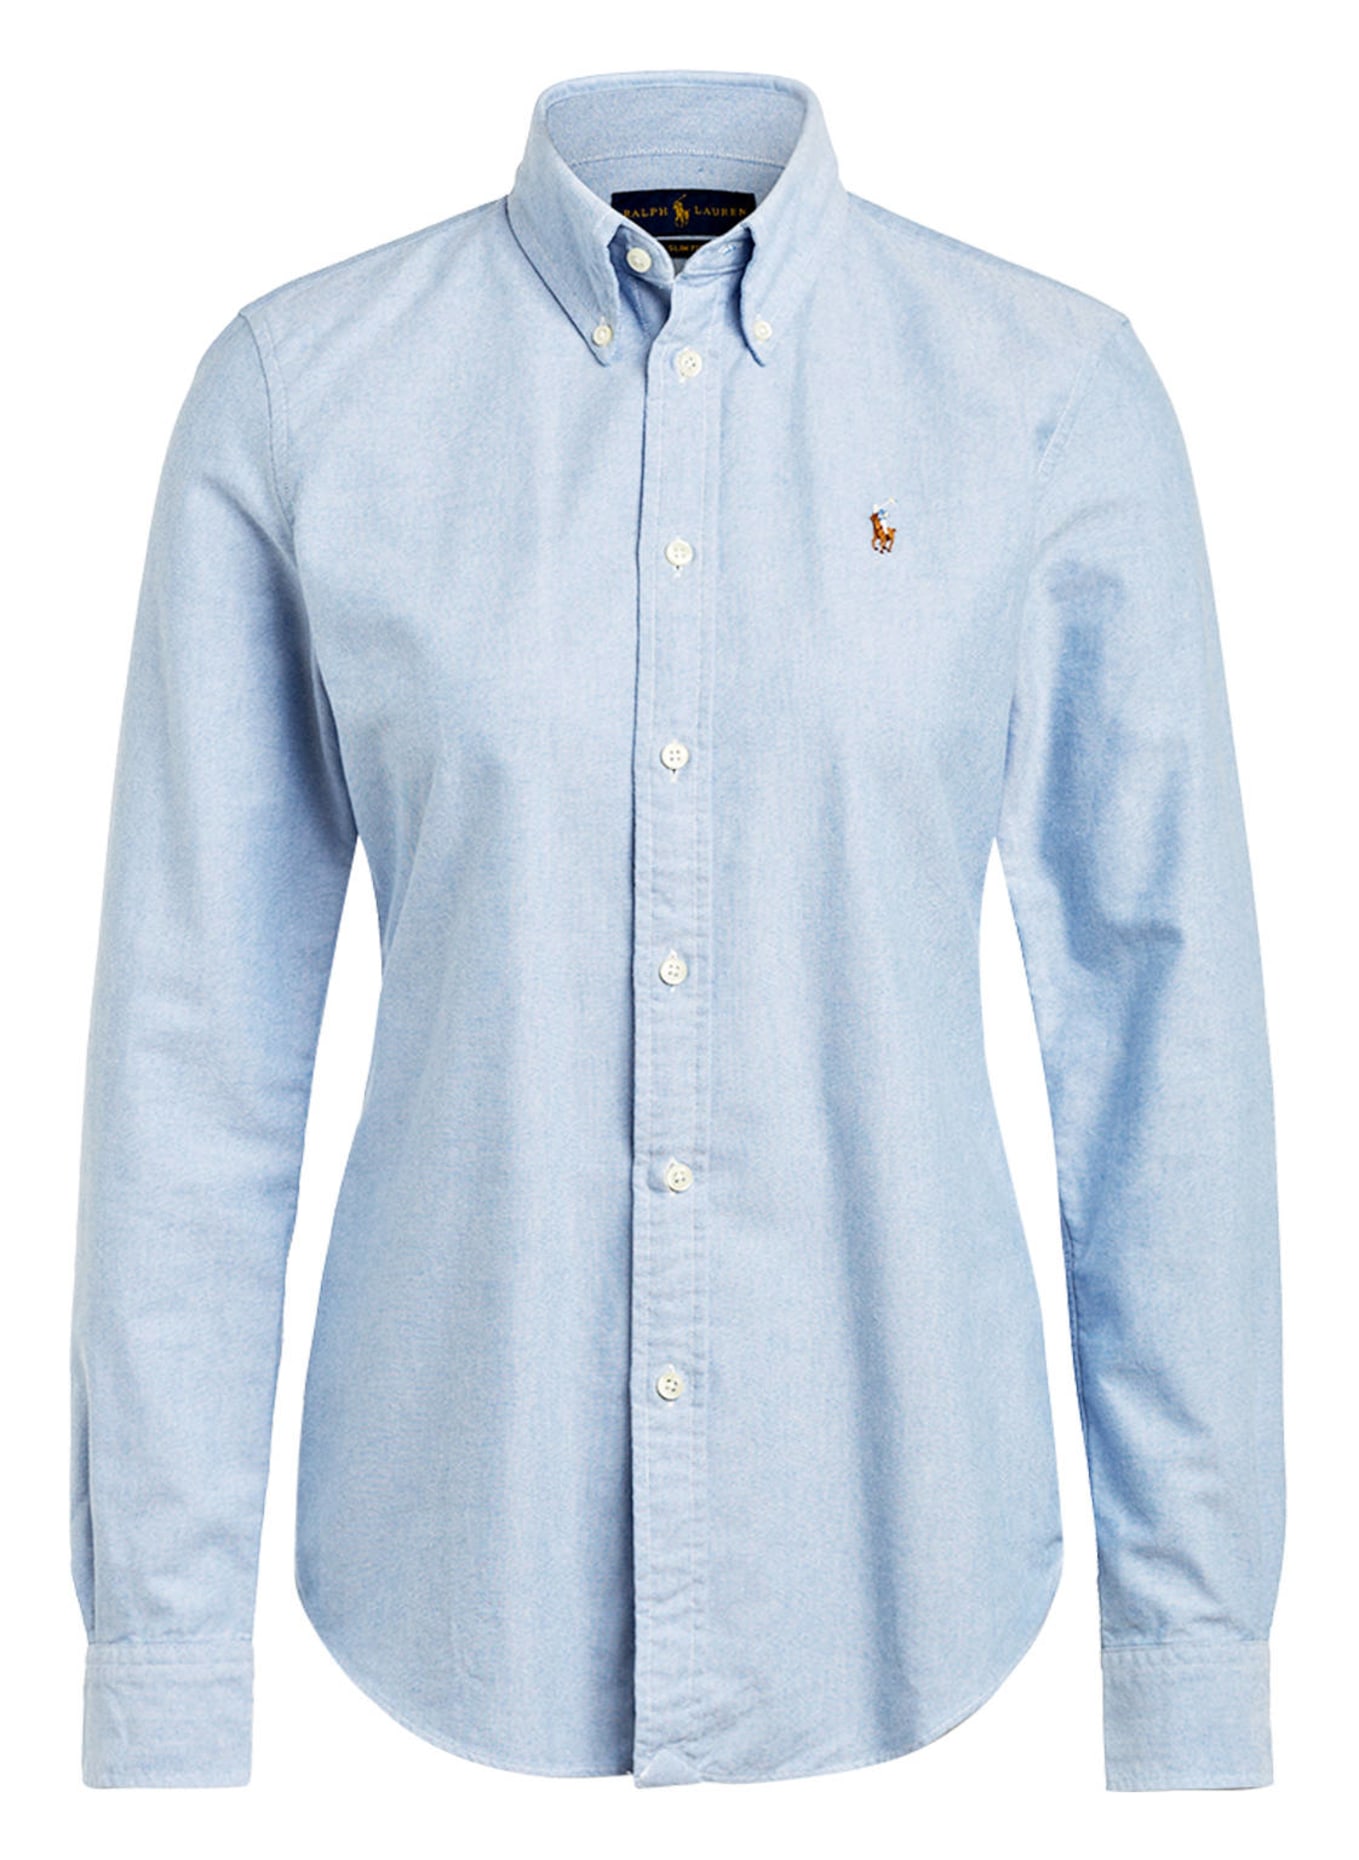 POLO RALPH LAUREN Shirt blouse, Color: LIGHT BLUE (Image 1)